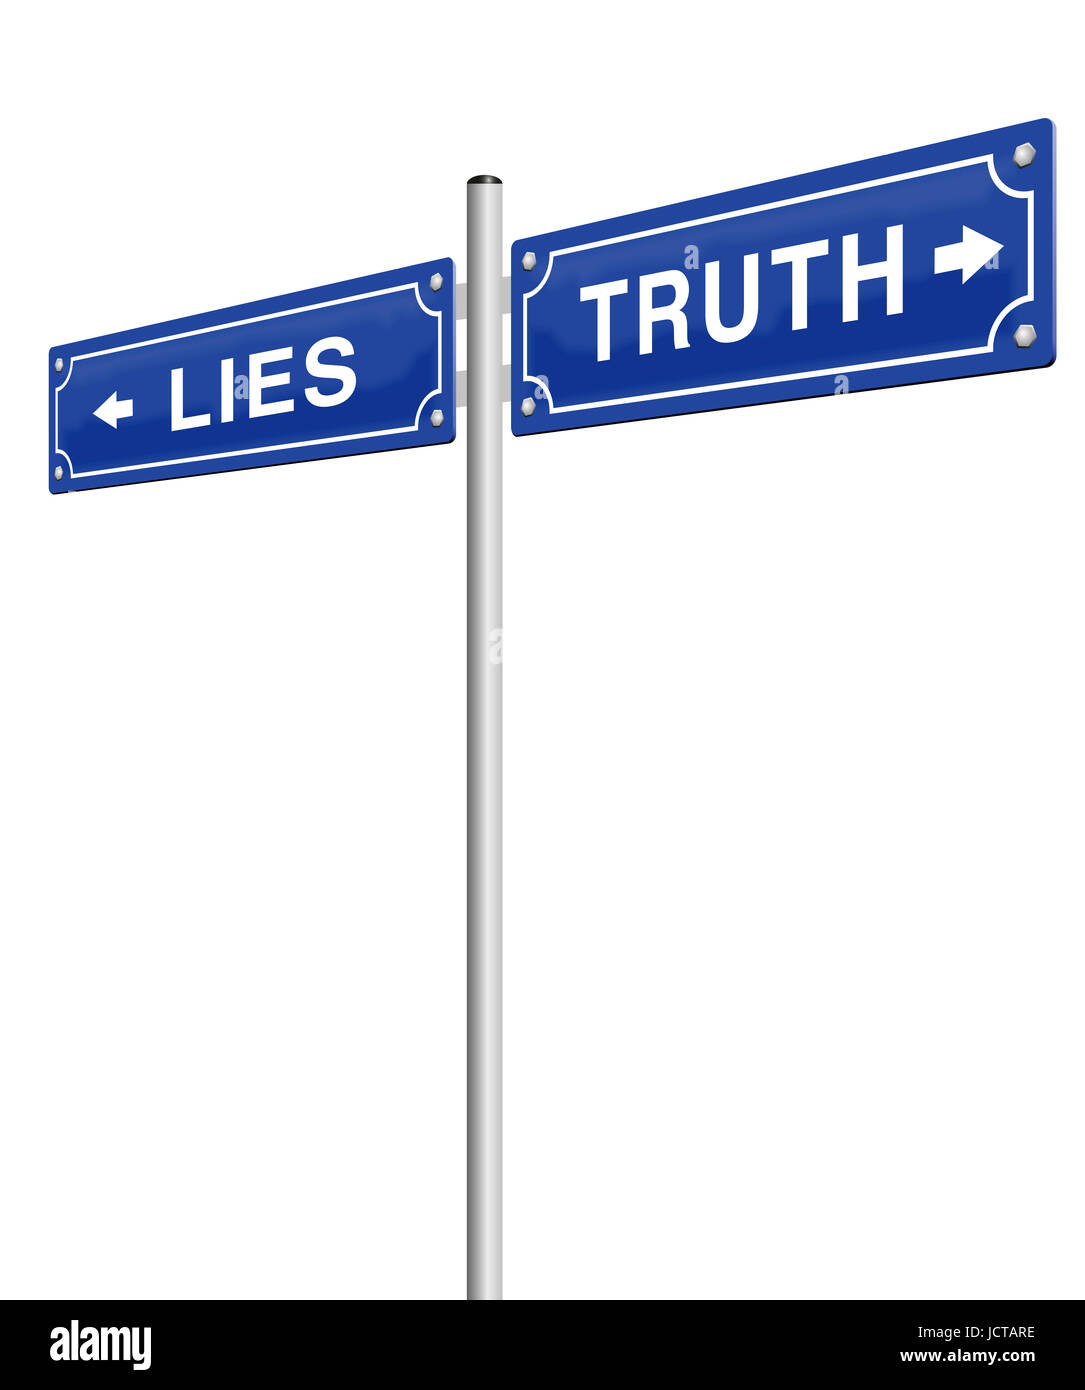 Mentiras verdad calle signo - usted decide la ruta que usted elija, el engaño o la honestidad, fraude o verity, falsos o hechos. Foto de stock